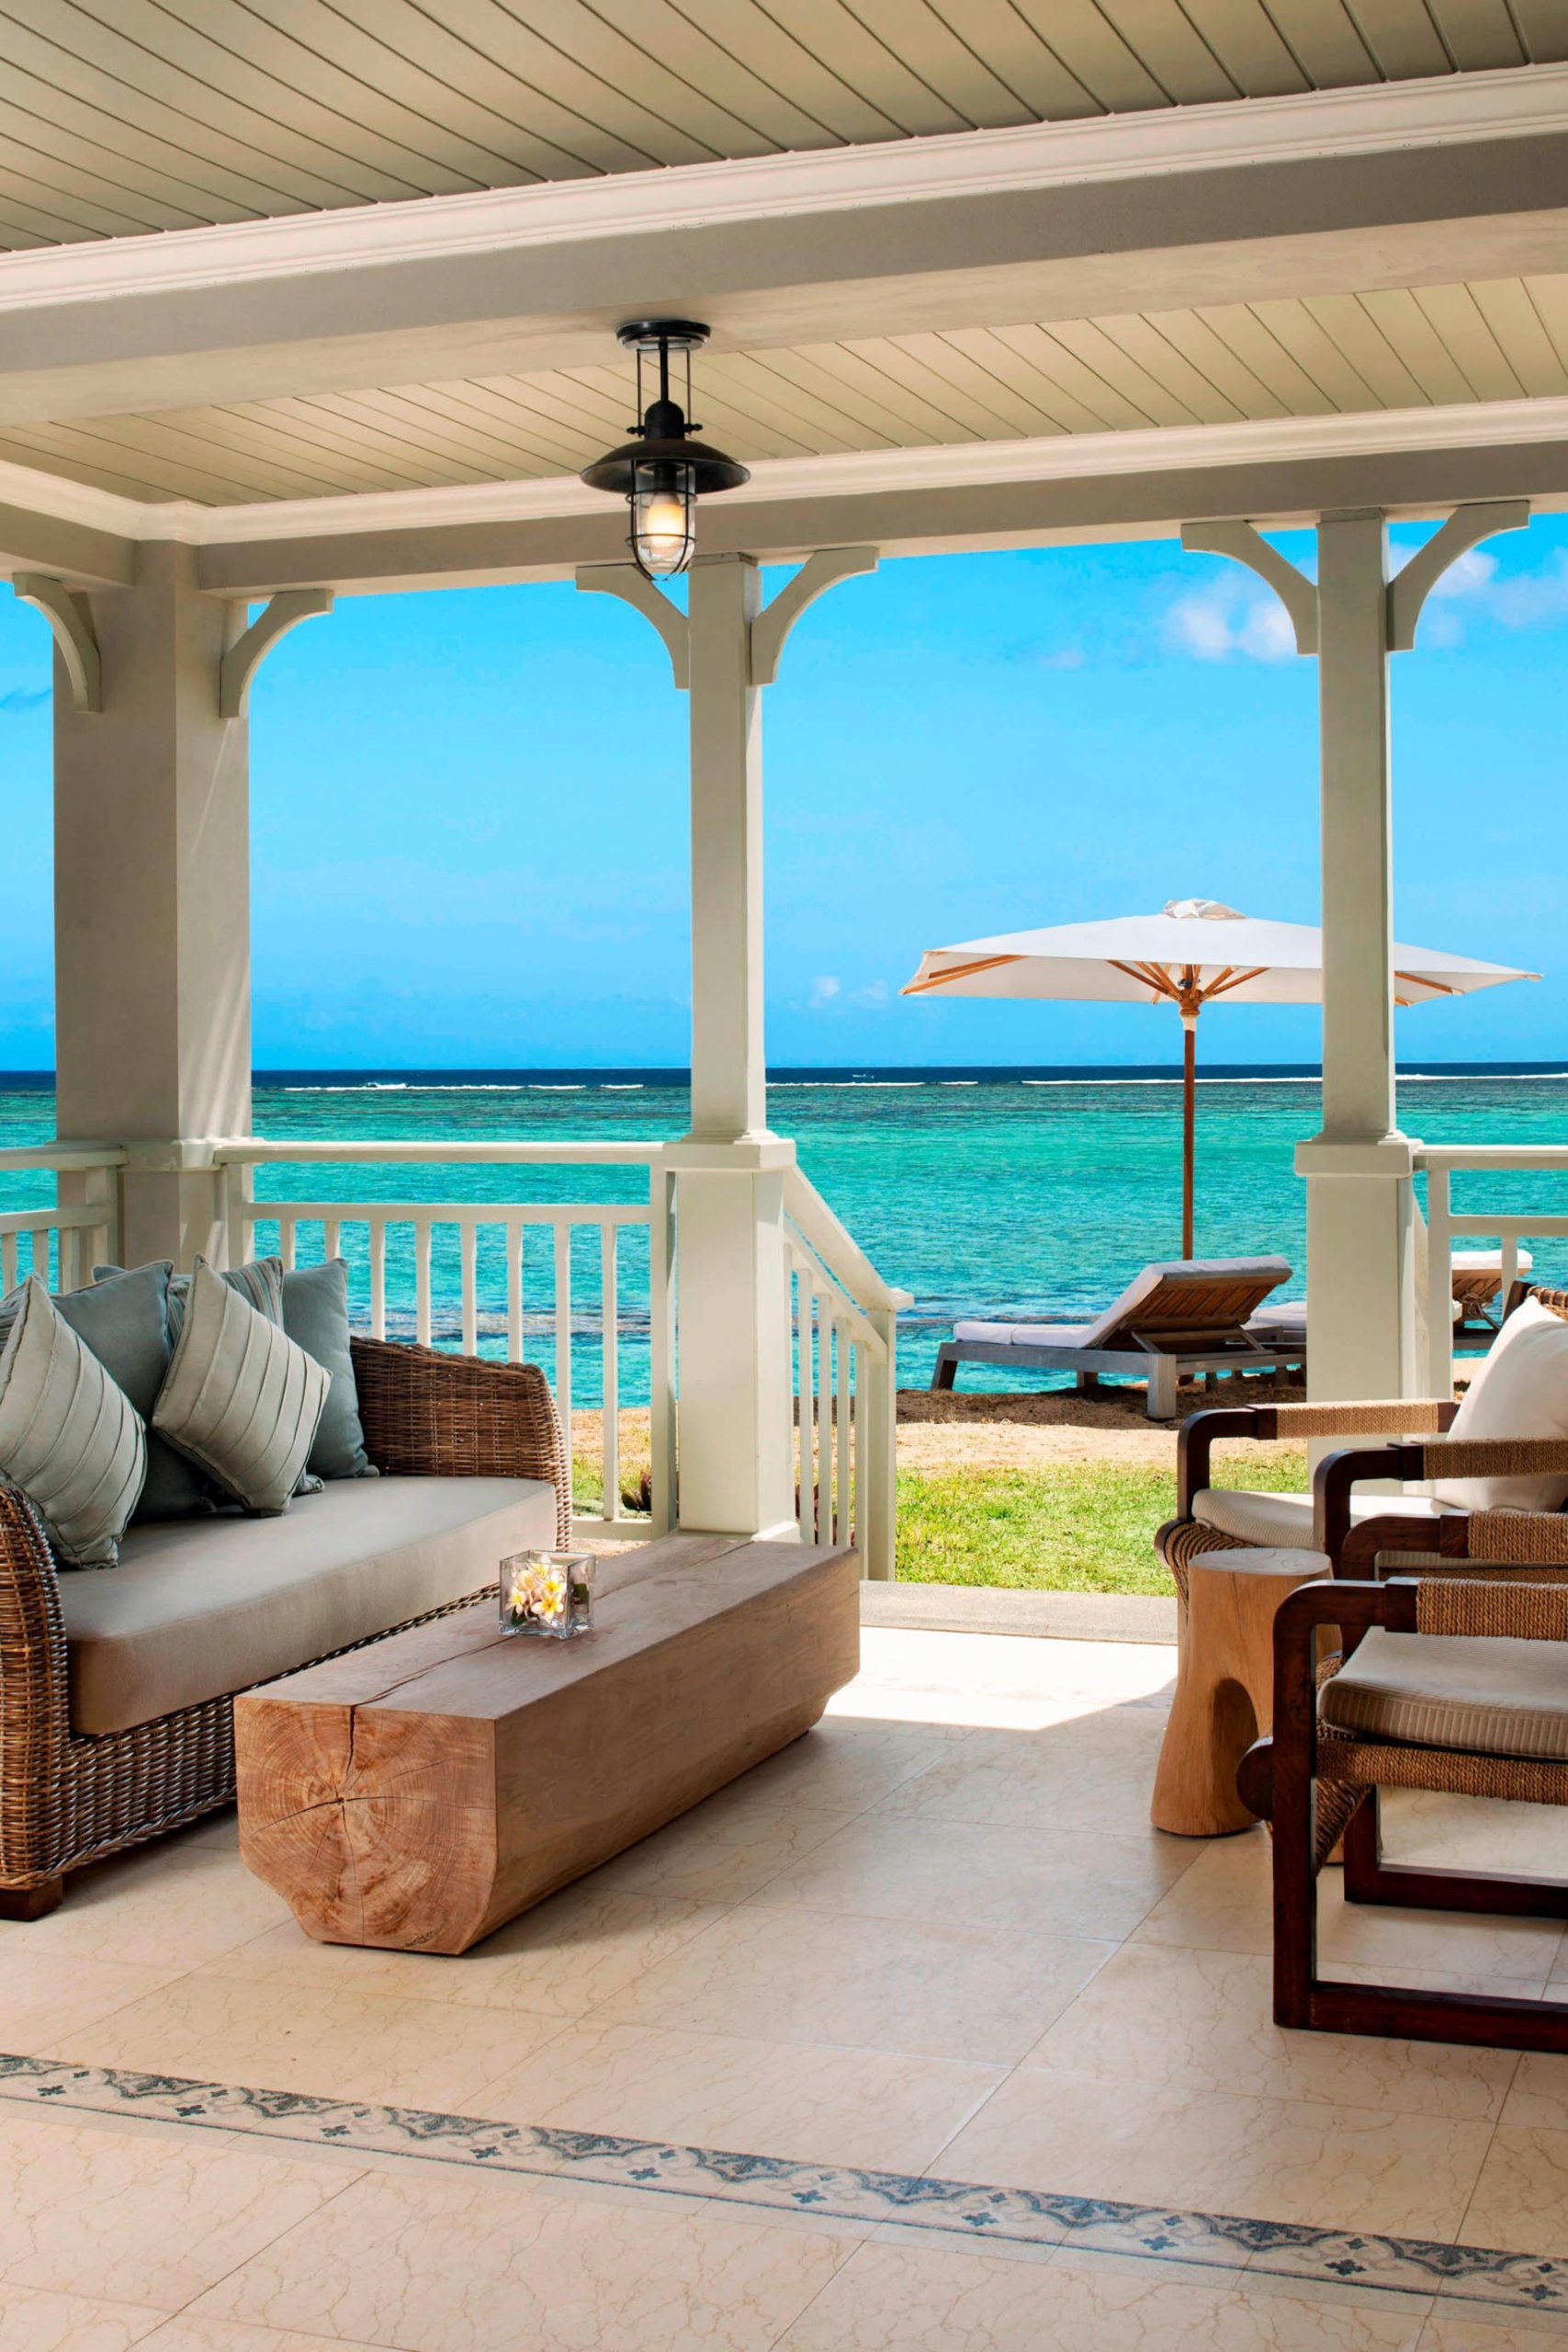 JW Marriott Mauritius Resort - Mauritius - Beachfront Access Suite Terrace